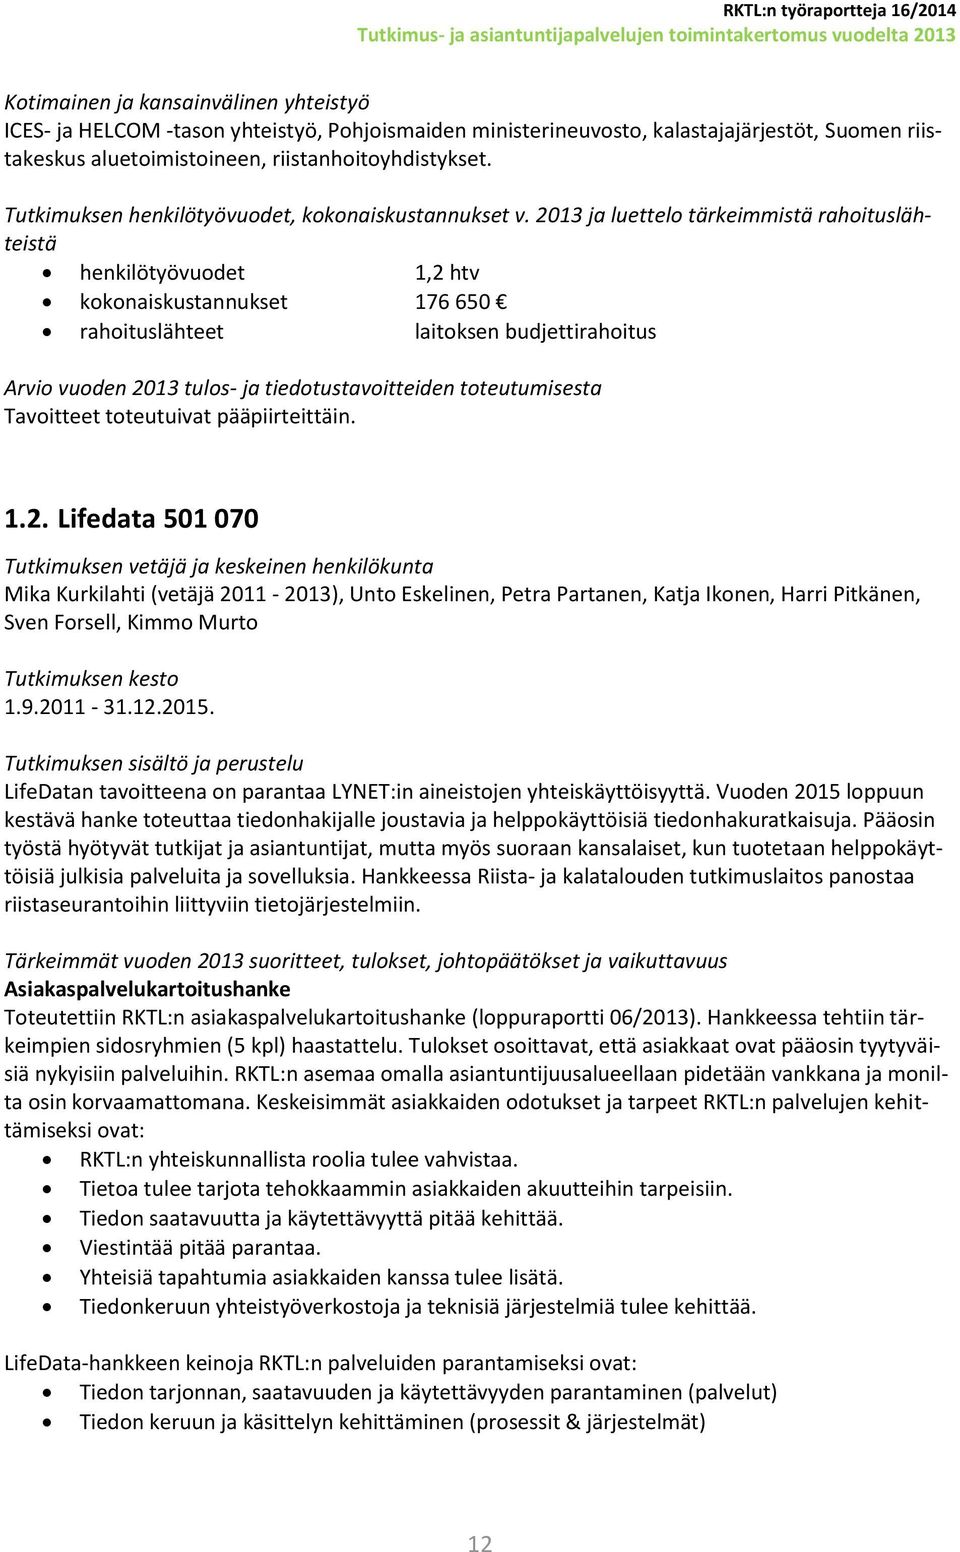 2013 ja luettelo tärkeimmistä rahoituslähteistä henkilötyövuodet 1,2 htv kokonaiskustannukset 176 650 rahoituslähteet laitoksen budjettirahoitus Tavoitteet toteutuivat pääpiirteittäin. 1.2. Lifedata 501 070 Mika Kurkilahti (vetäjä 2011-2013), Unto Eskelinen, Petra Partanen, Katja Ikonen, Harri Pitkänen, Sven Forsell, Kimmo Murto 1.